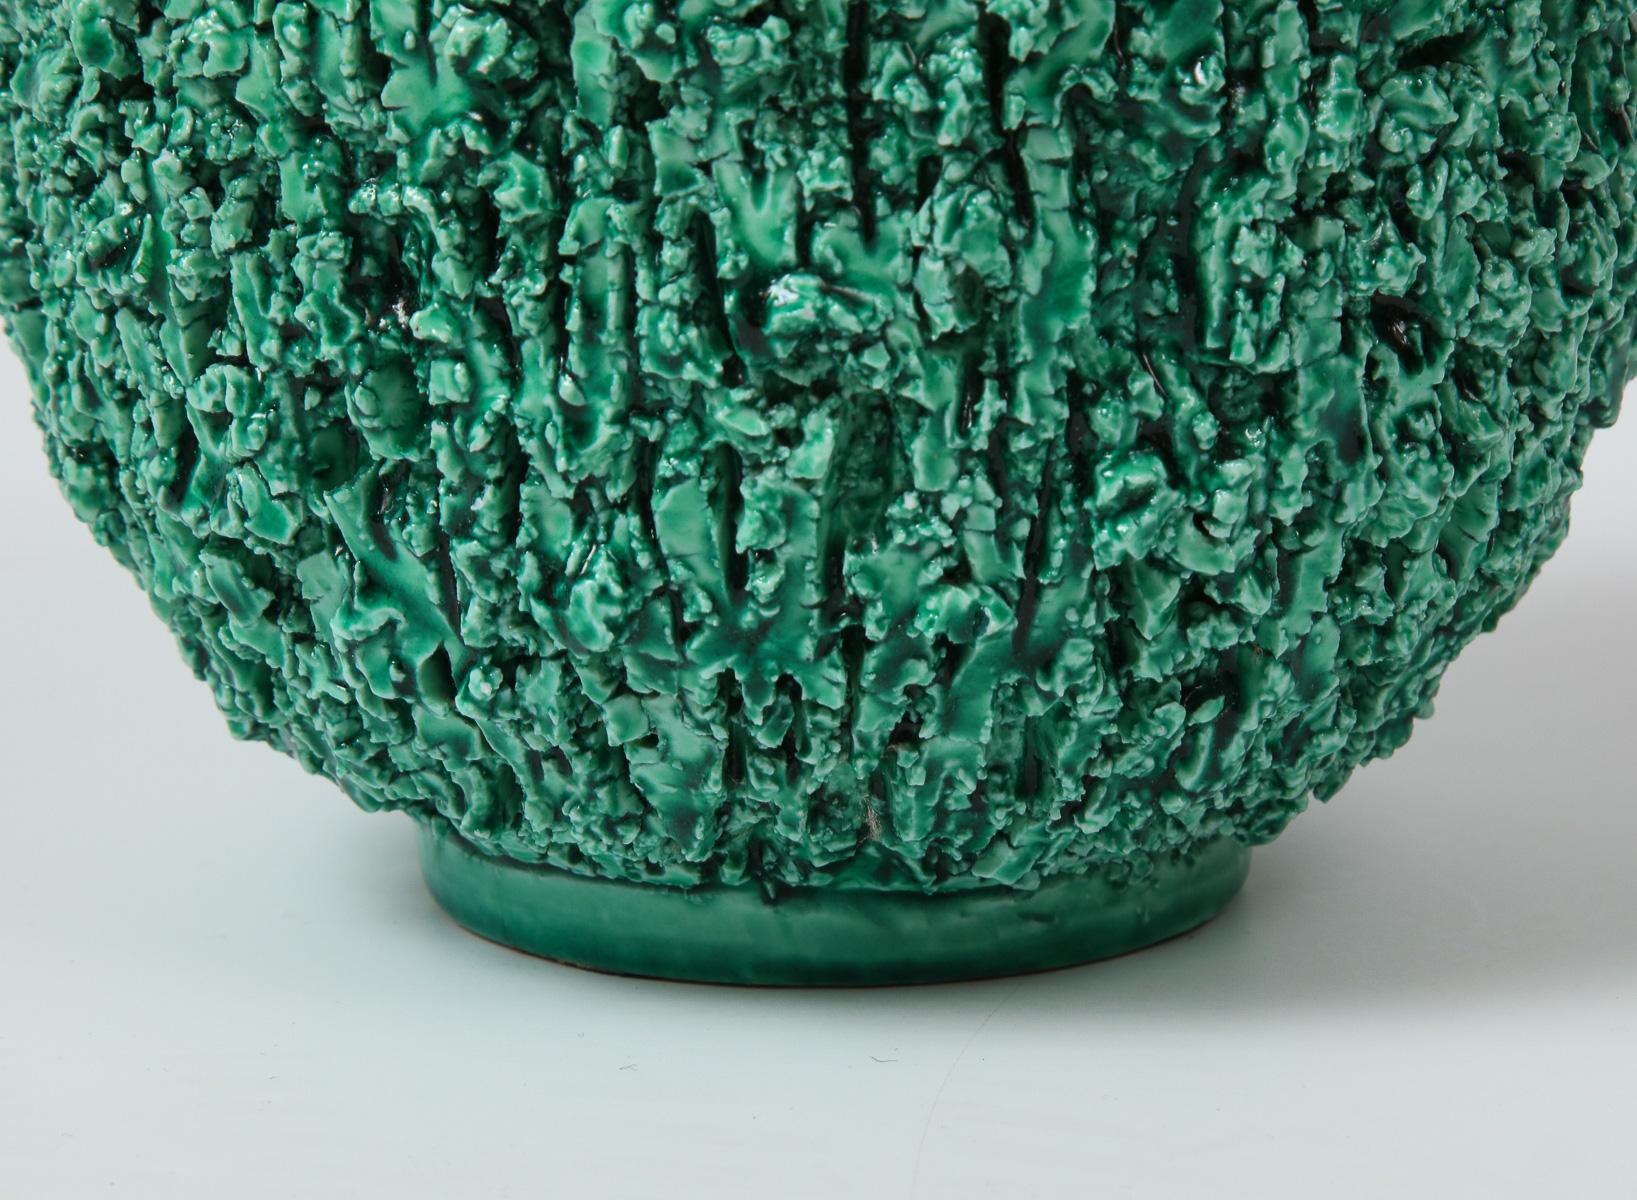 Mid-Century Modern Ceramic Vase by Gunnar Nylund, Scandinavian, Green Vase, 